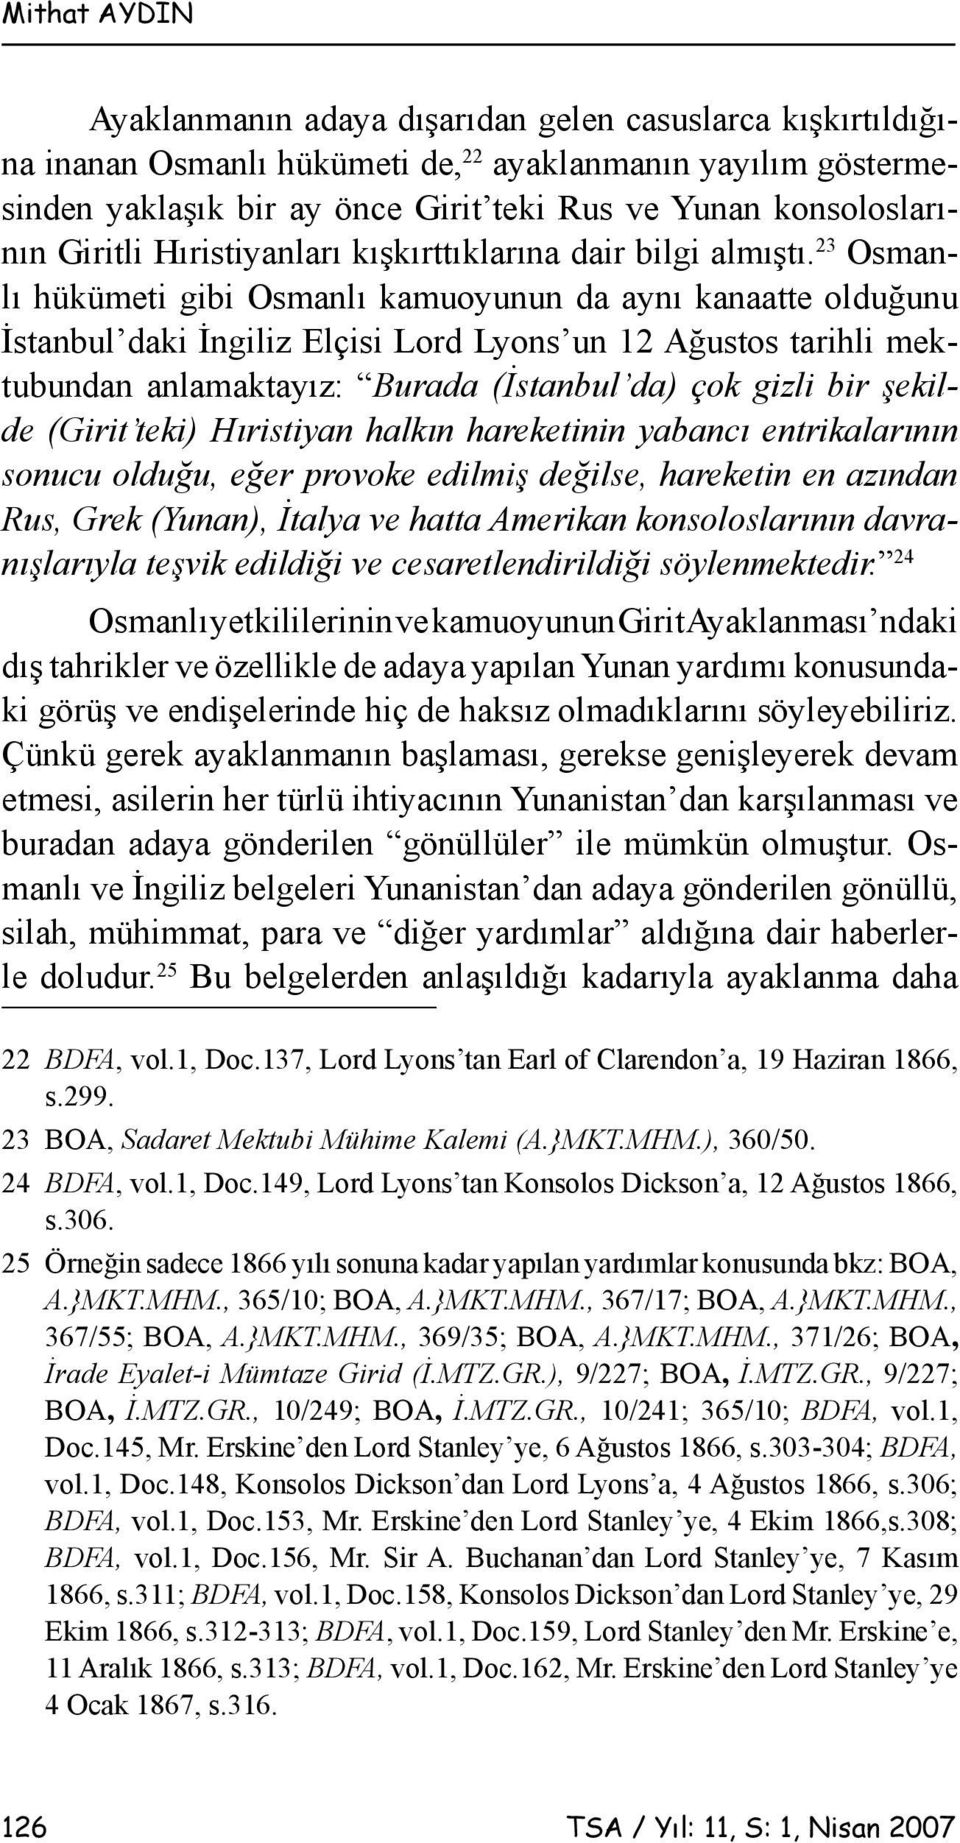 23 Osmanlı hükümeti gibi Osmanlı kamuoyunun da aynı kanaatte olduğunu İstanbul daki İngiliz Elçisi Lord Lyons un 12 Ağustos tarihli mektubundan anlamaktayız: Burada (İstanbul da) çok gizli bir